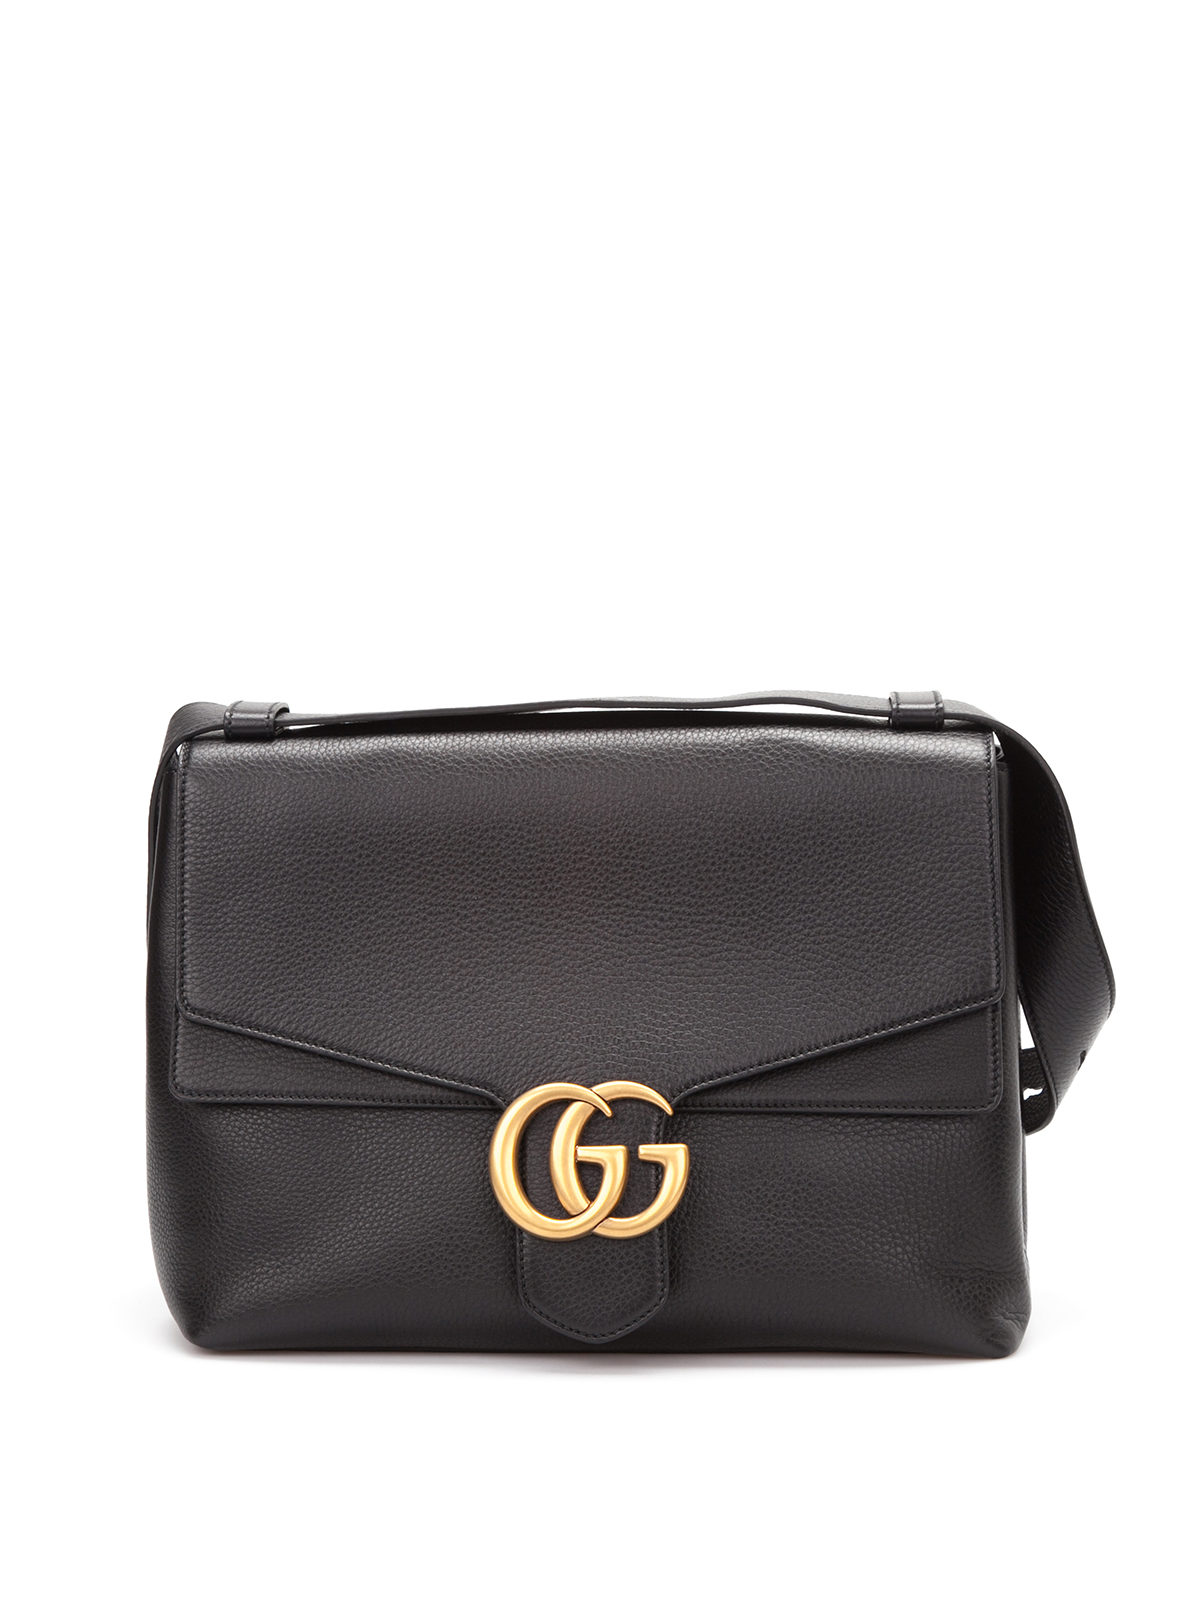 Shoulder bags Gucci - GG marmont leather shoulder bag - 400245A7M0T1000